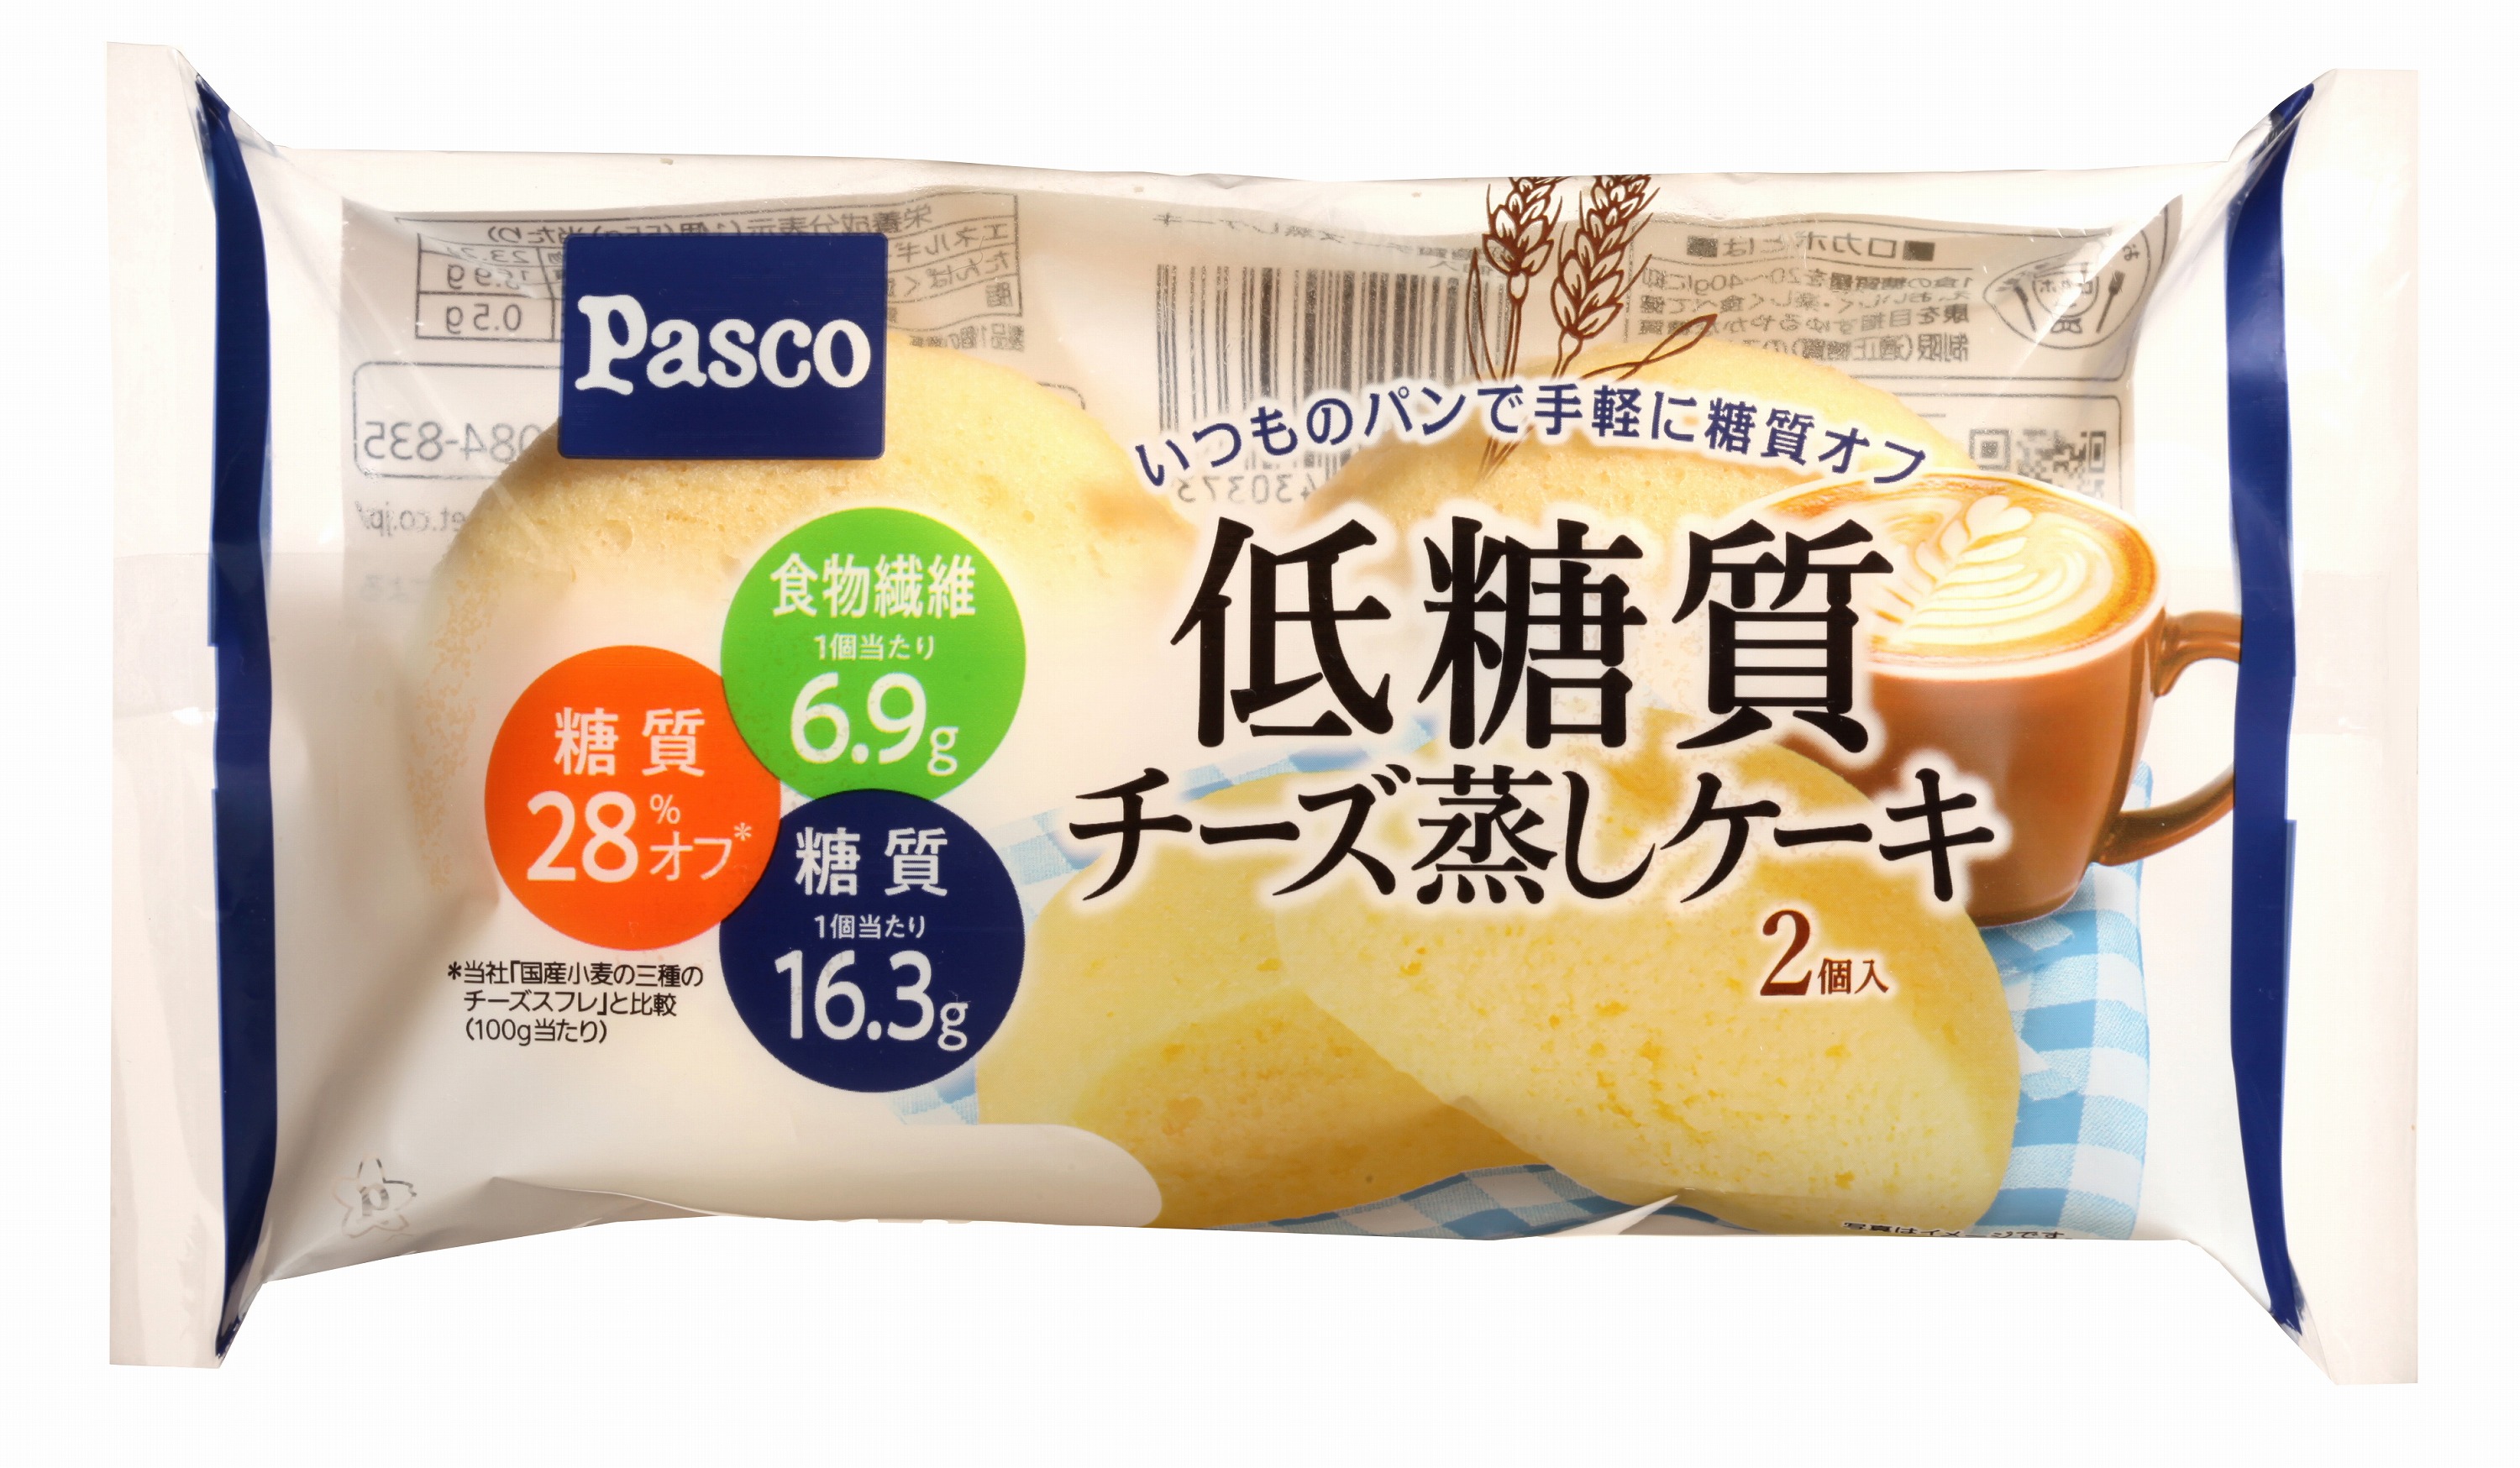 低糖質シリーズ新商品 低糖質チーズ蒸しケーキ2個入 21年1月1日より発売 Pasco 超熟のpasco 敷島製パン株式会社